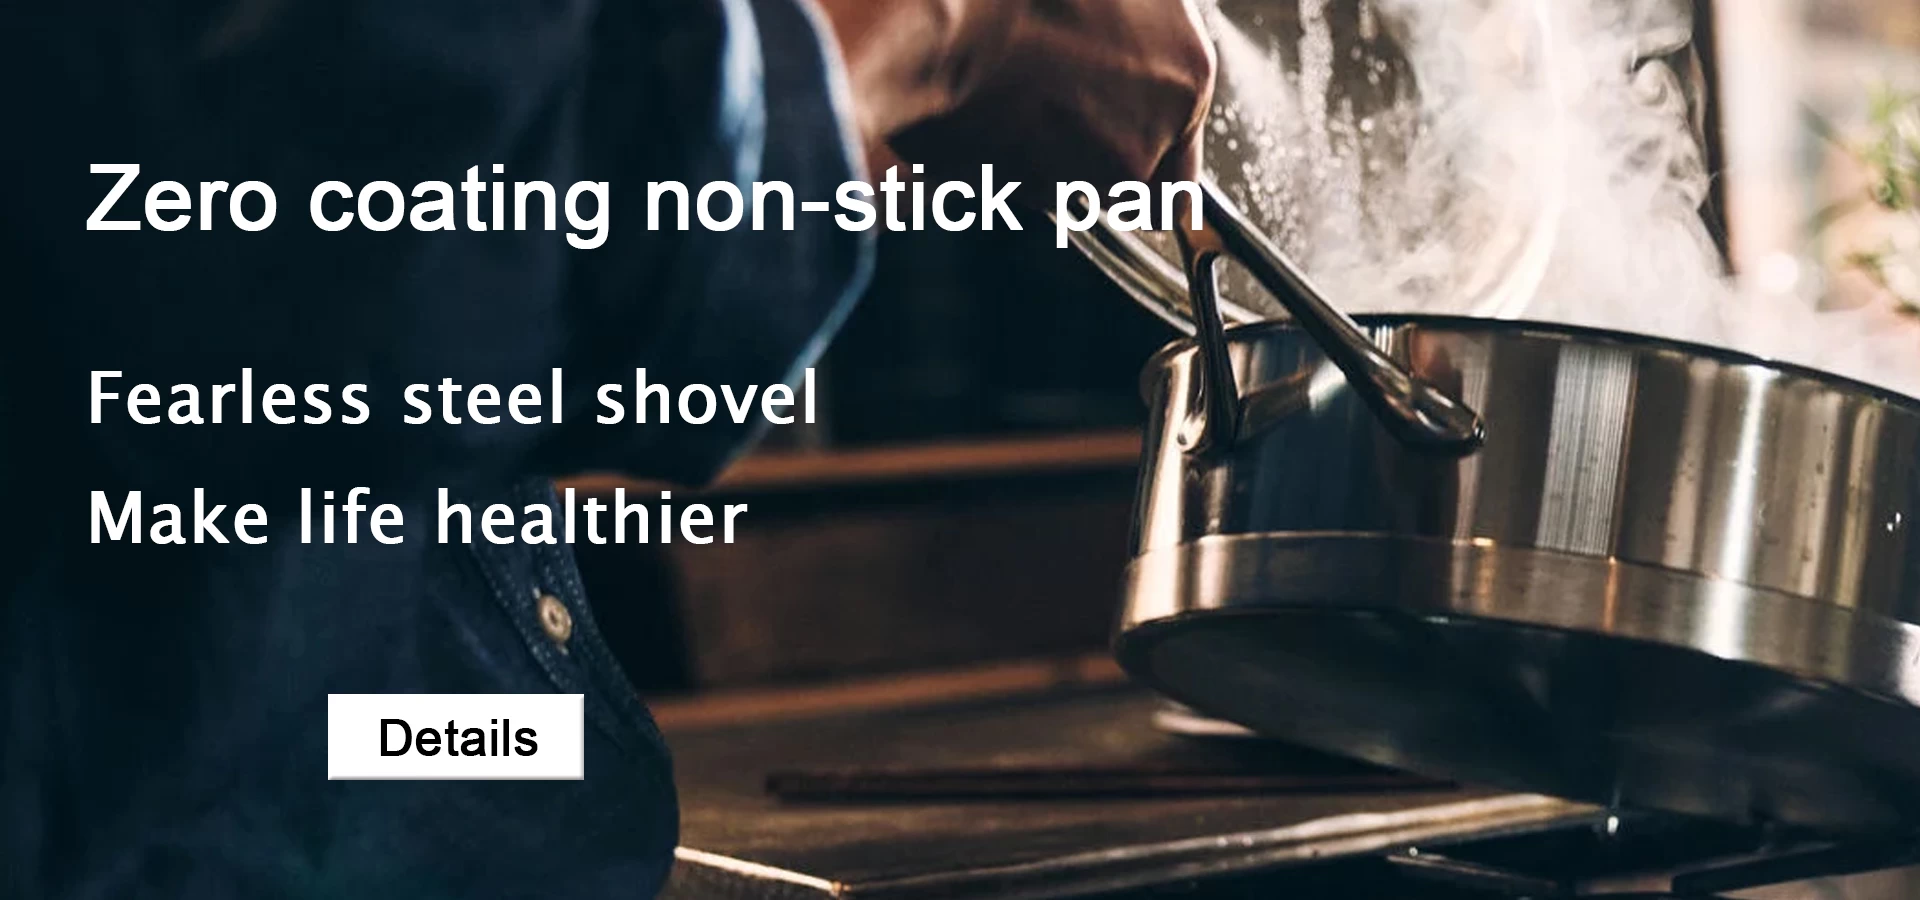 Zero coating non-stick pan